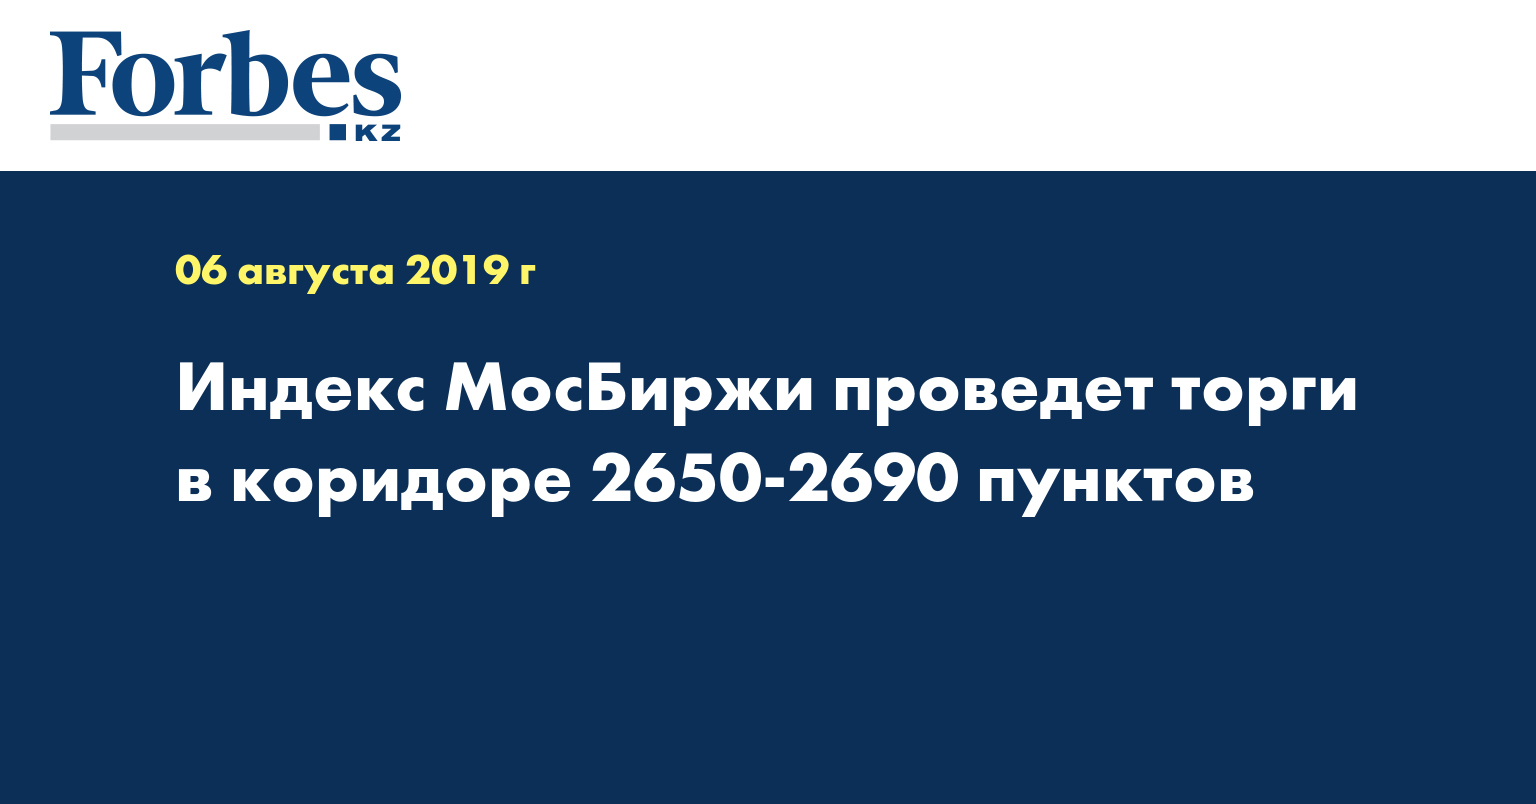 Индекс МосБиржи проведет торги в коридоре 2650-2690 пунктов